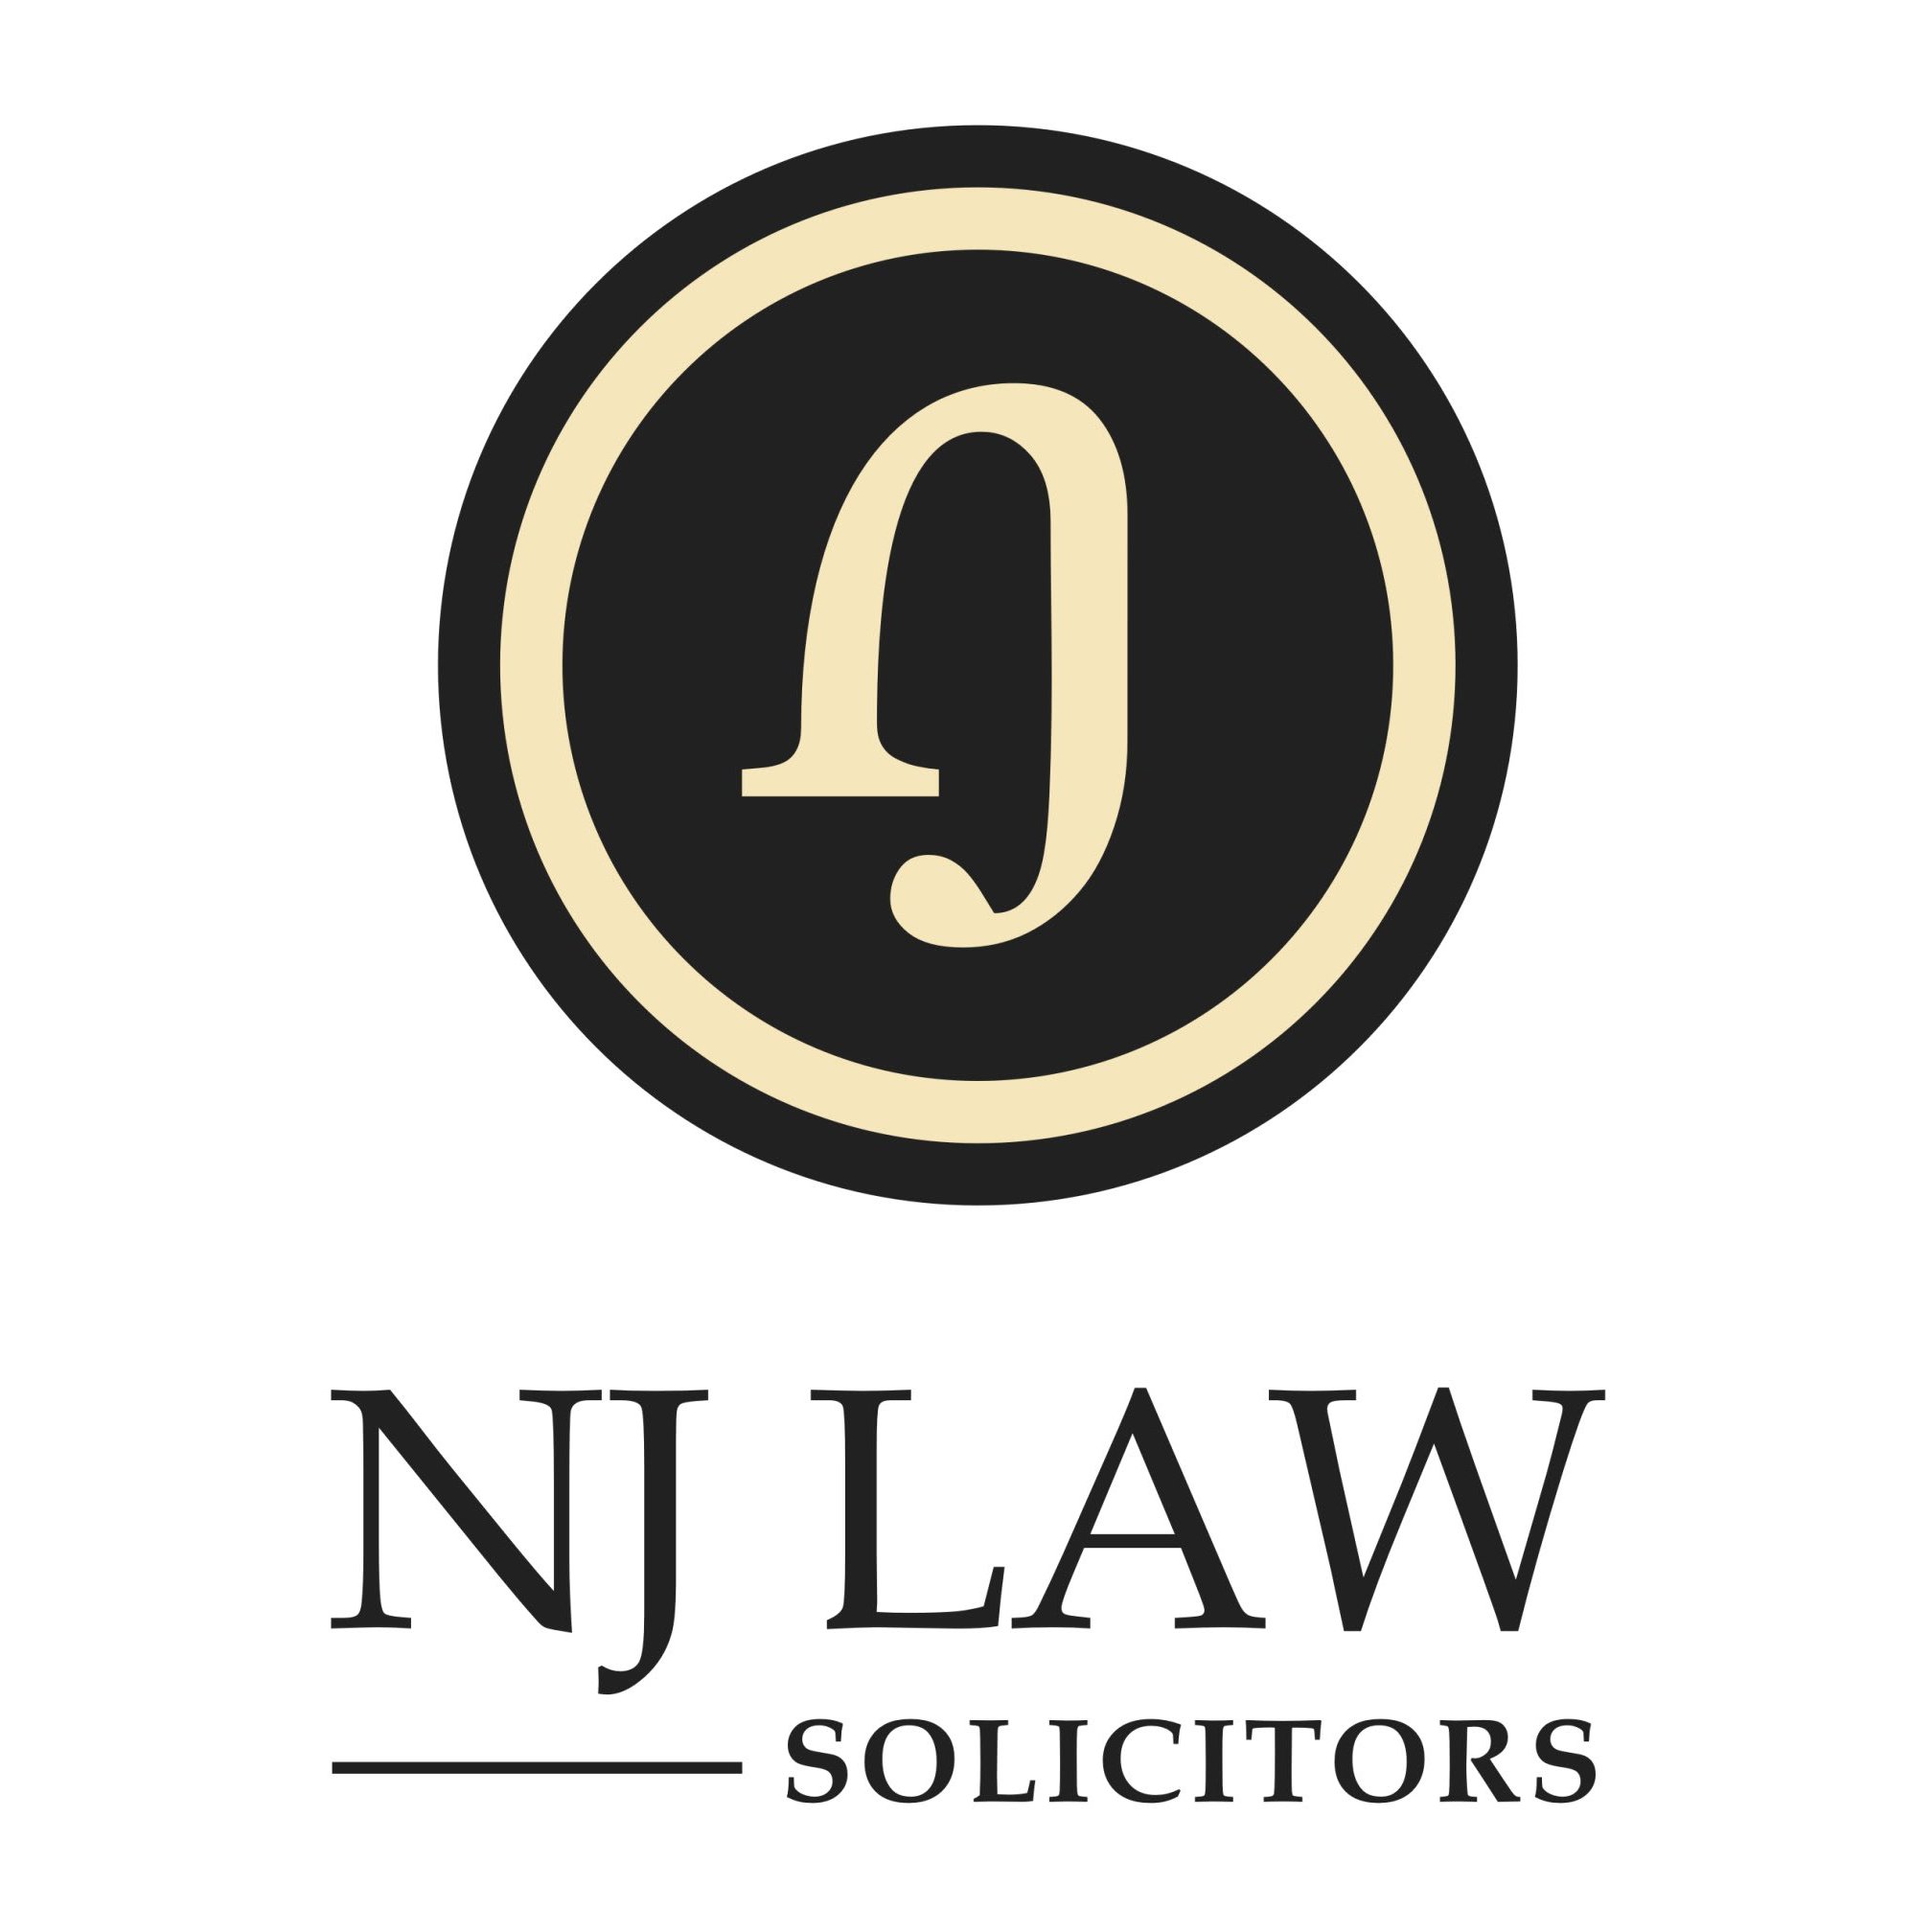 NJ Law Solicitors - London, London W12 8DZ - 020 8222 6655 | ShowMeLocal.com